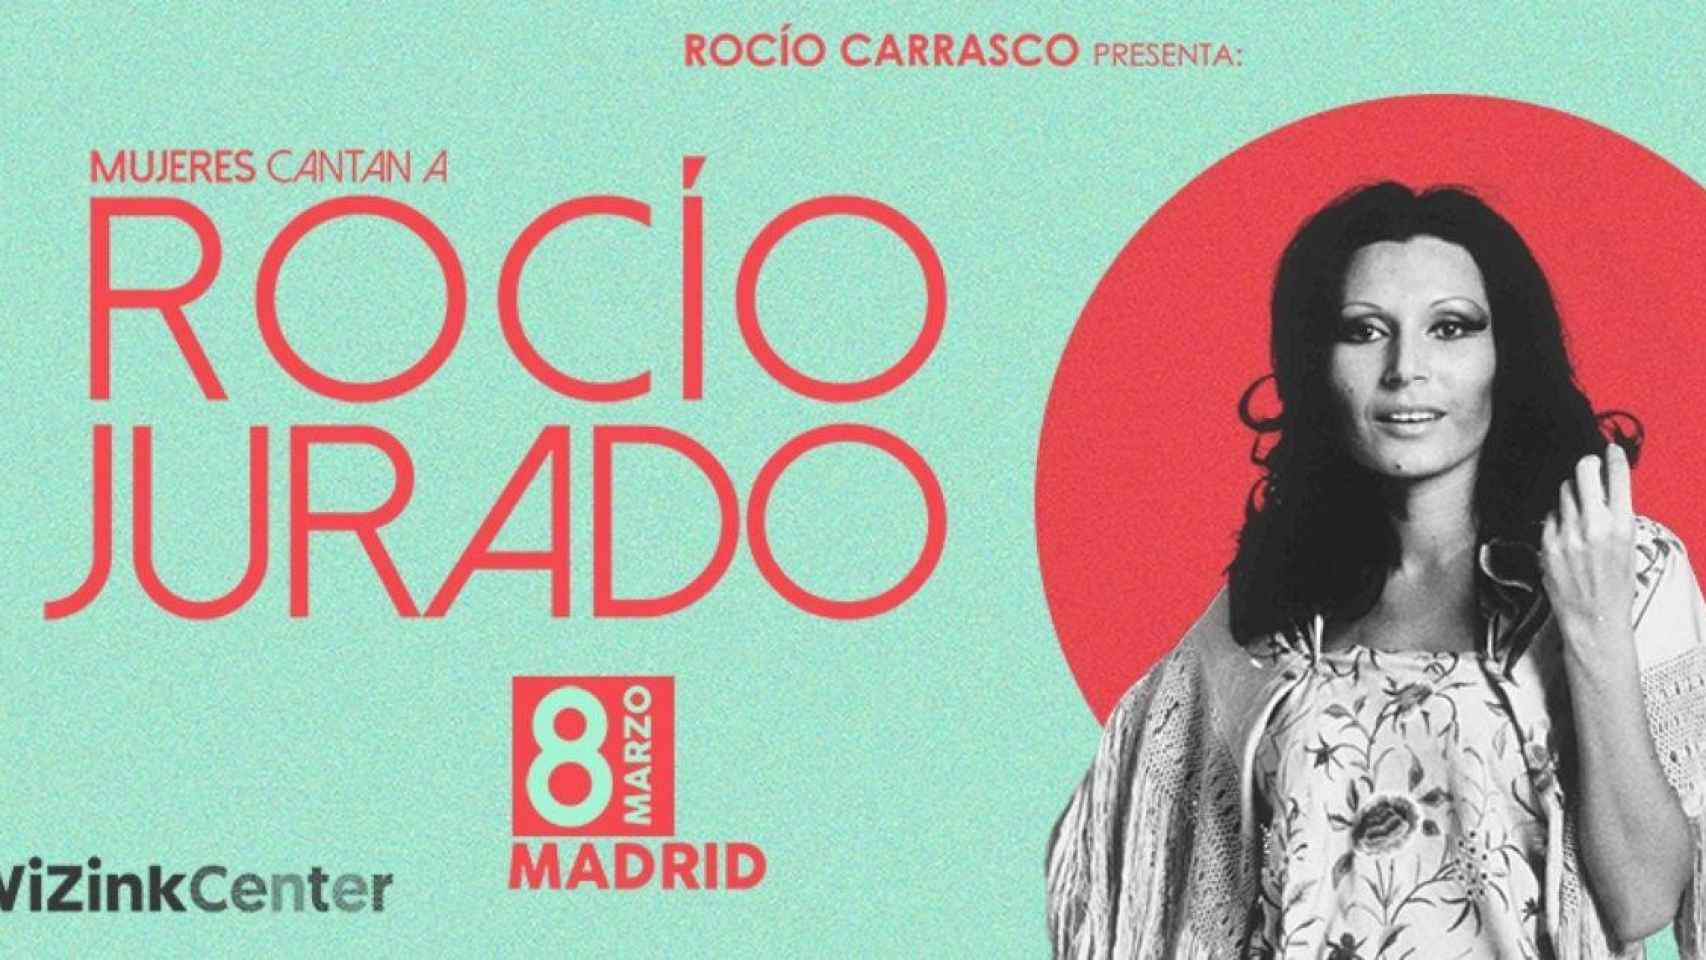 Cartel promocional del concierto 'Mujeres cantan a Rocío Jurado' / WiZink Center